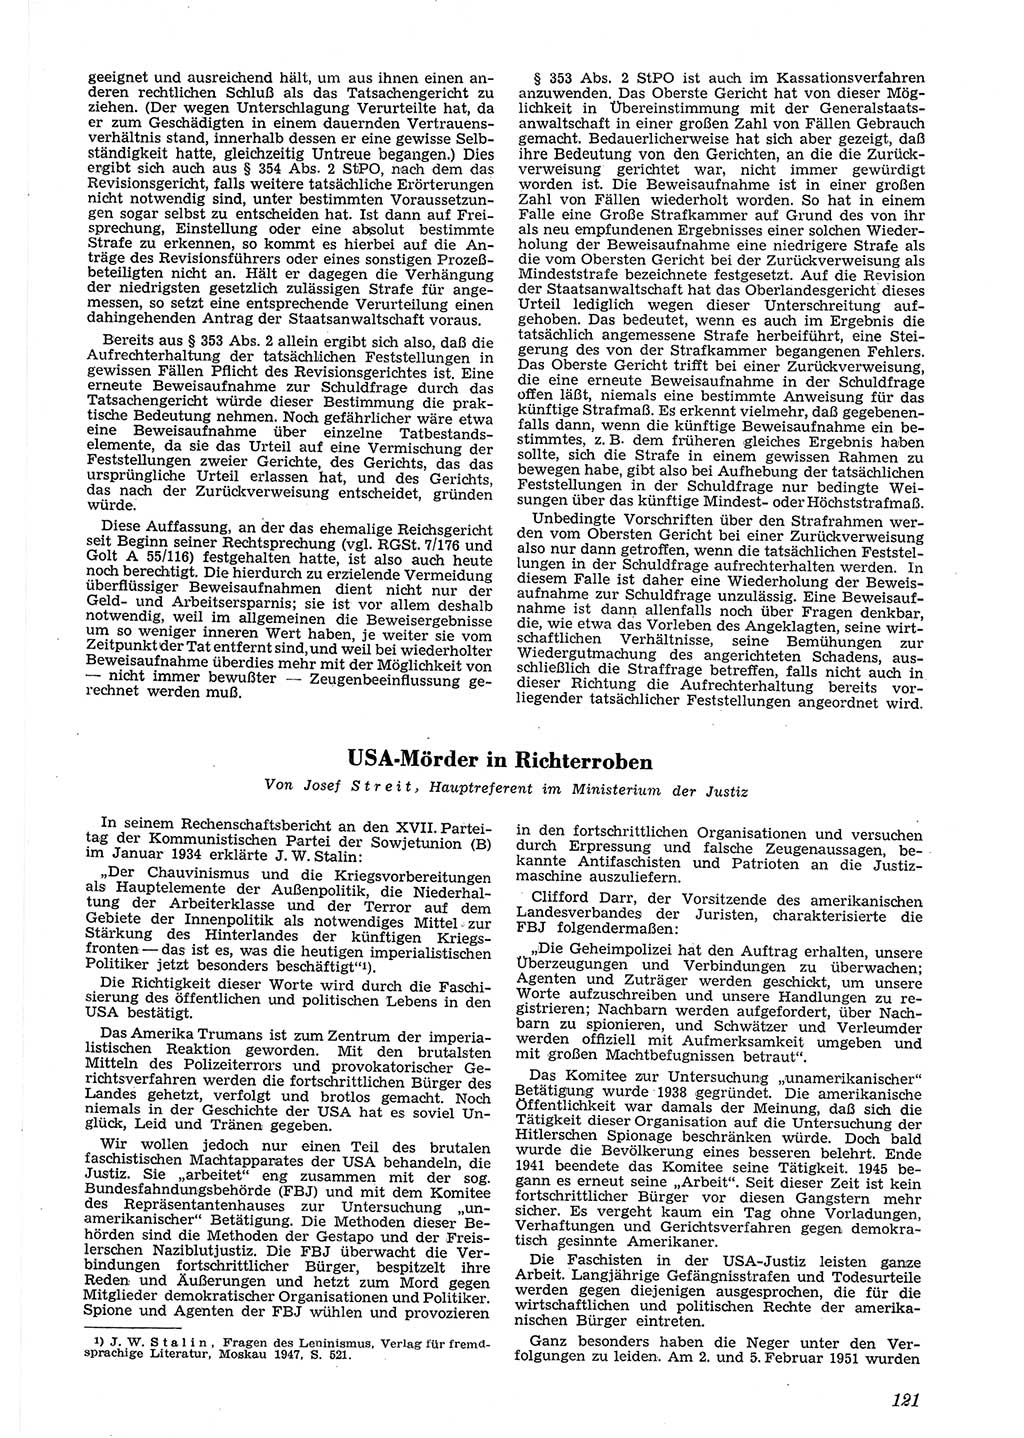 Neue Justiz (NJ), Zeitschrift für Recht und Rechtswissenschaft [Deutsche Demokratische Republik (DDR)], 5. Jahrgang 1951, Seite 121 (NJ DDR 1951, S. 121)